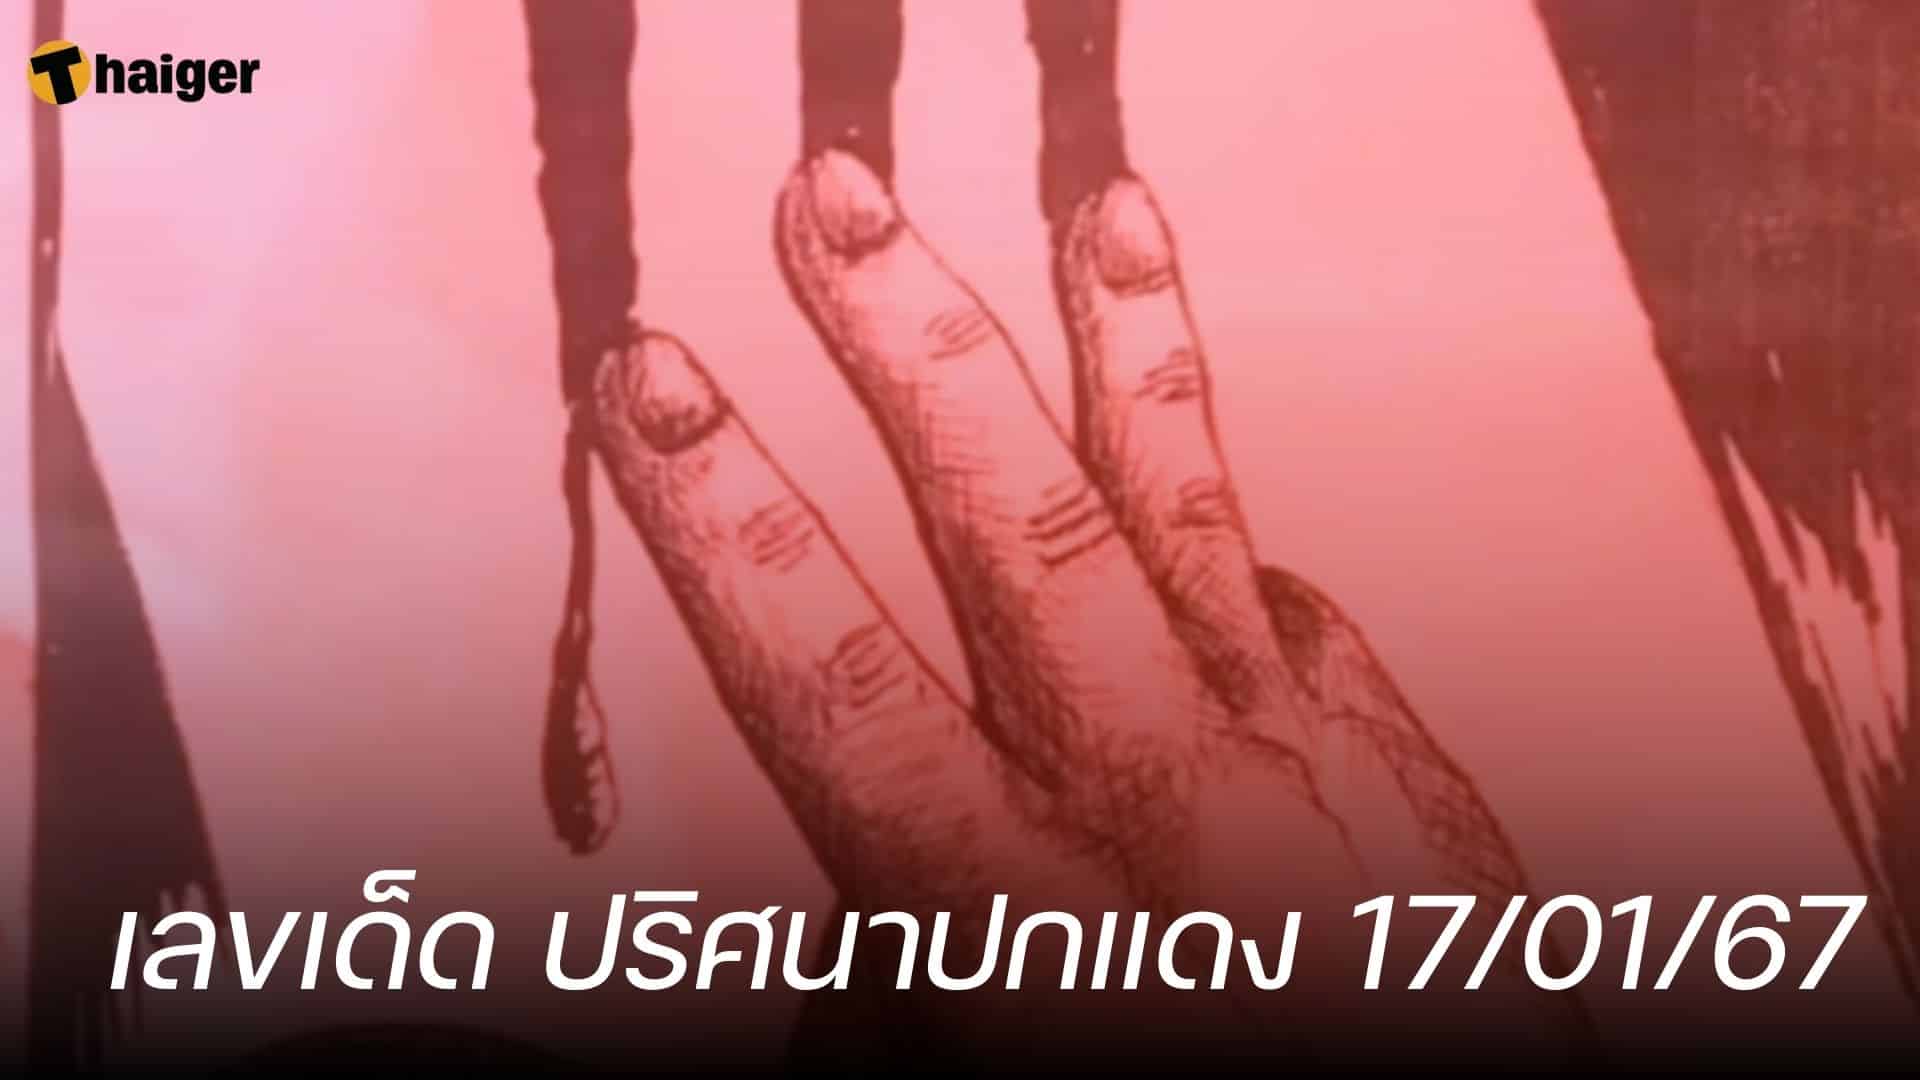 ส่องเลขเด็ด ปริศนาปกแดง ถอดรหัสหวยโค้งสุดท้าย 17/01/67 | Thaiger ข่าวไทย